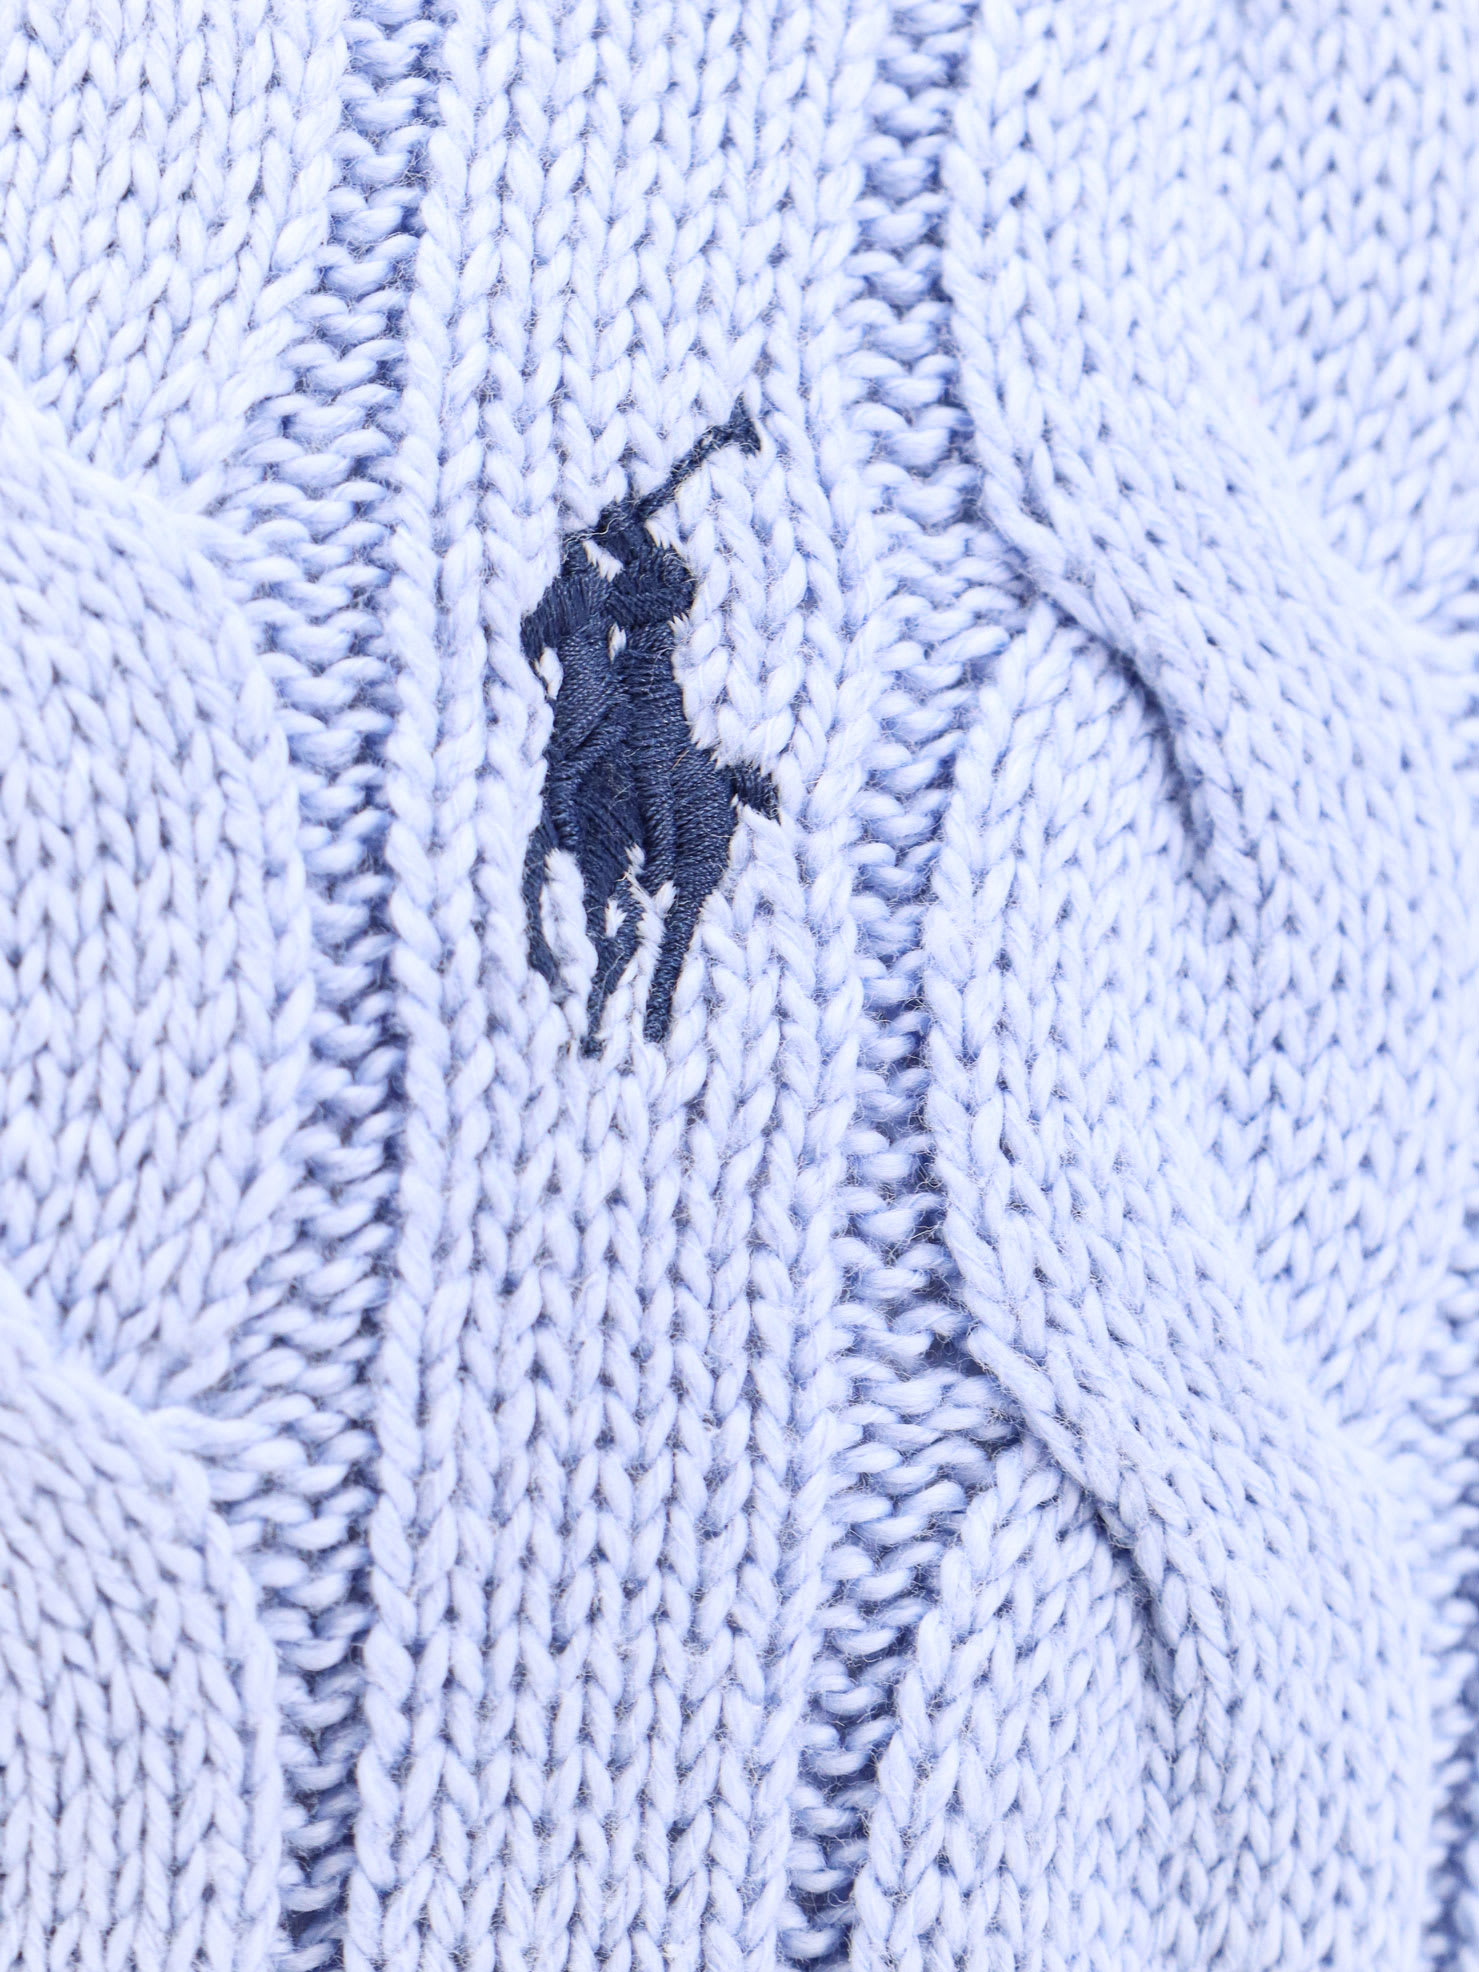 Shop Polo Ralph Lauren Sweater